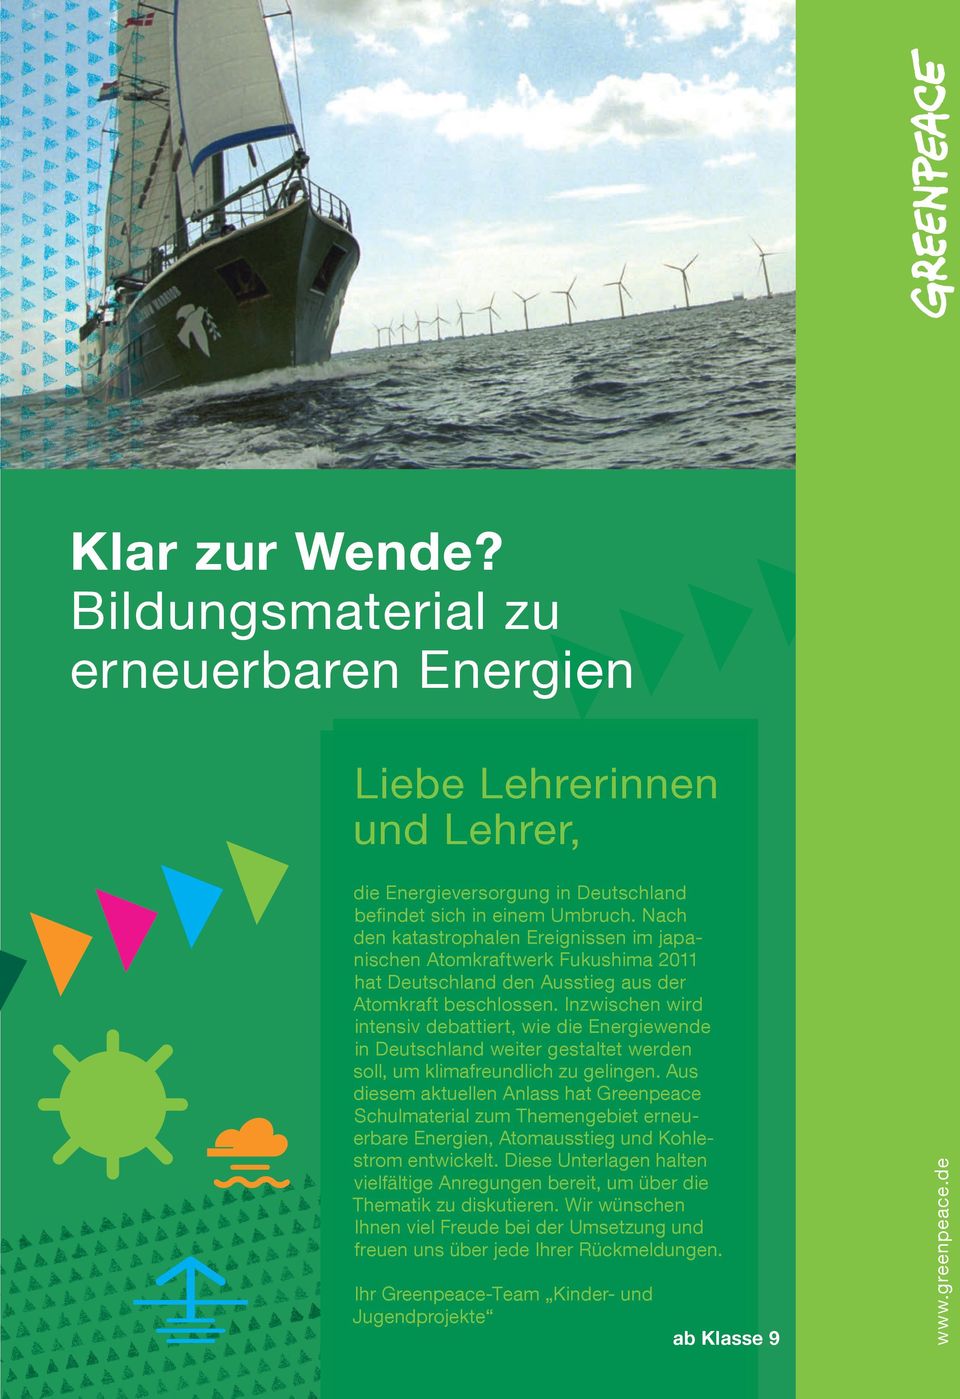 Inzwischen wird intensiv debattiert, wie die Energiewende in Deutschland weiter gestaltet werden soll, um klimafreundlich zu gelingen.